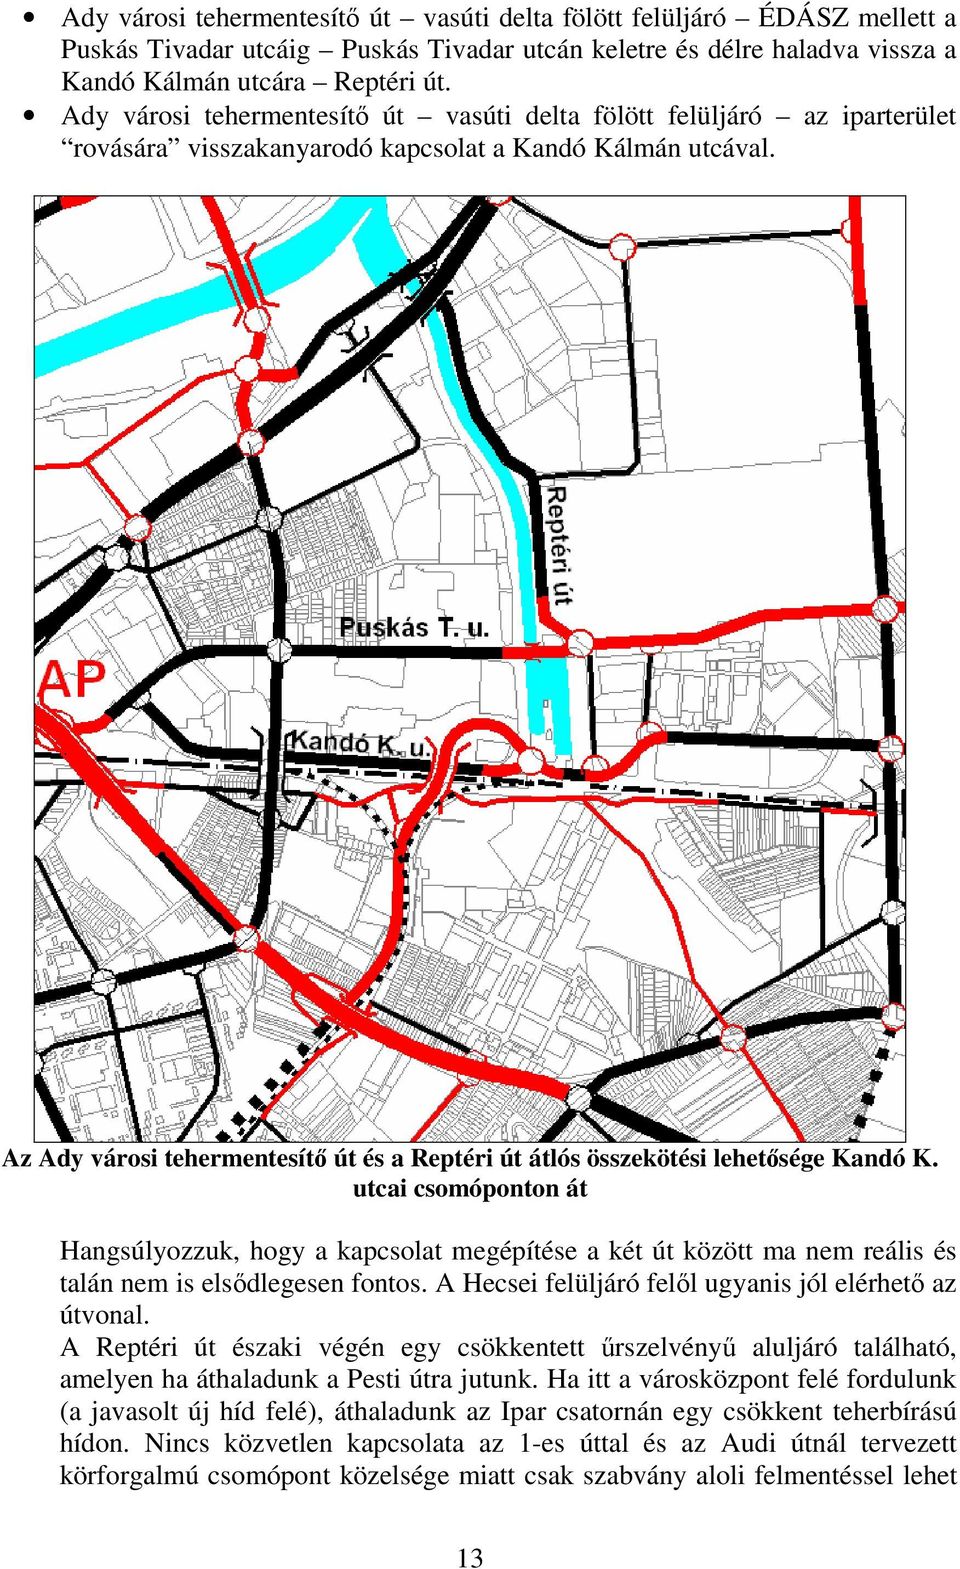 Az Ady városi tehermentesít út és a Reptéri út átlós összekötési lehetsége Kandó K.